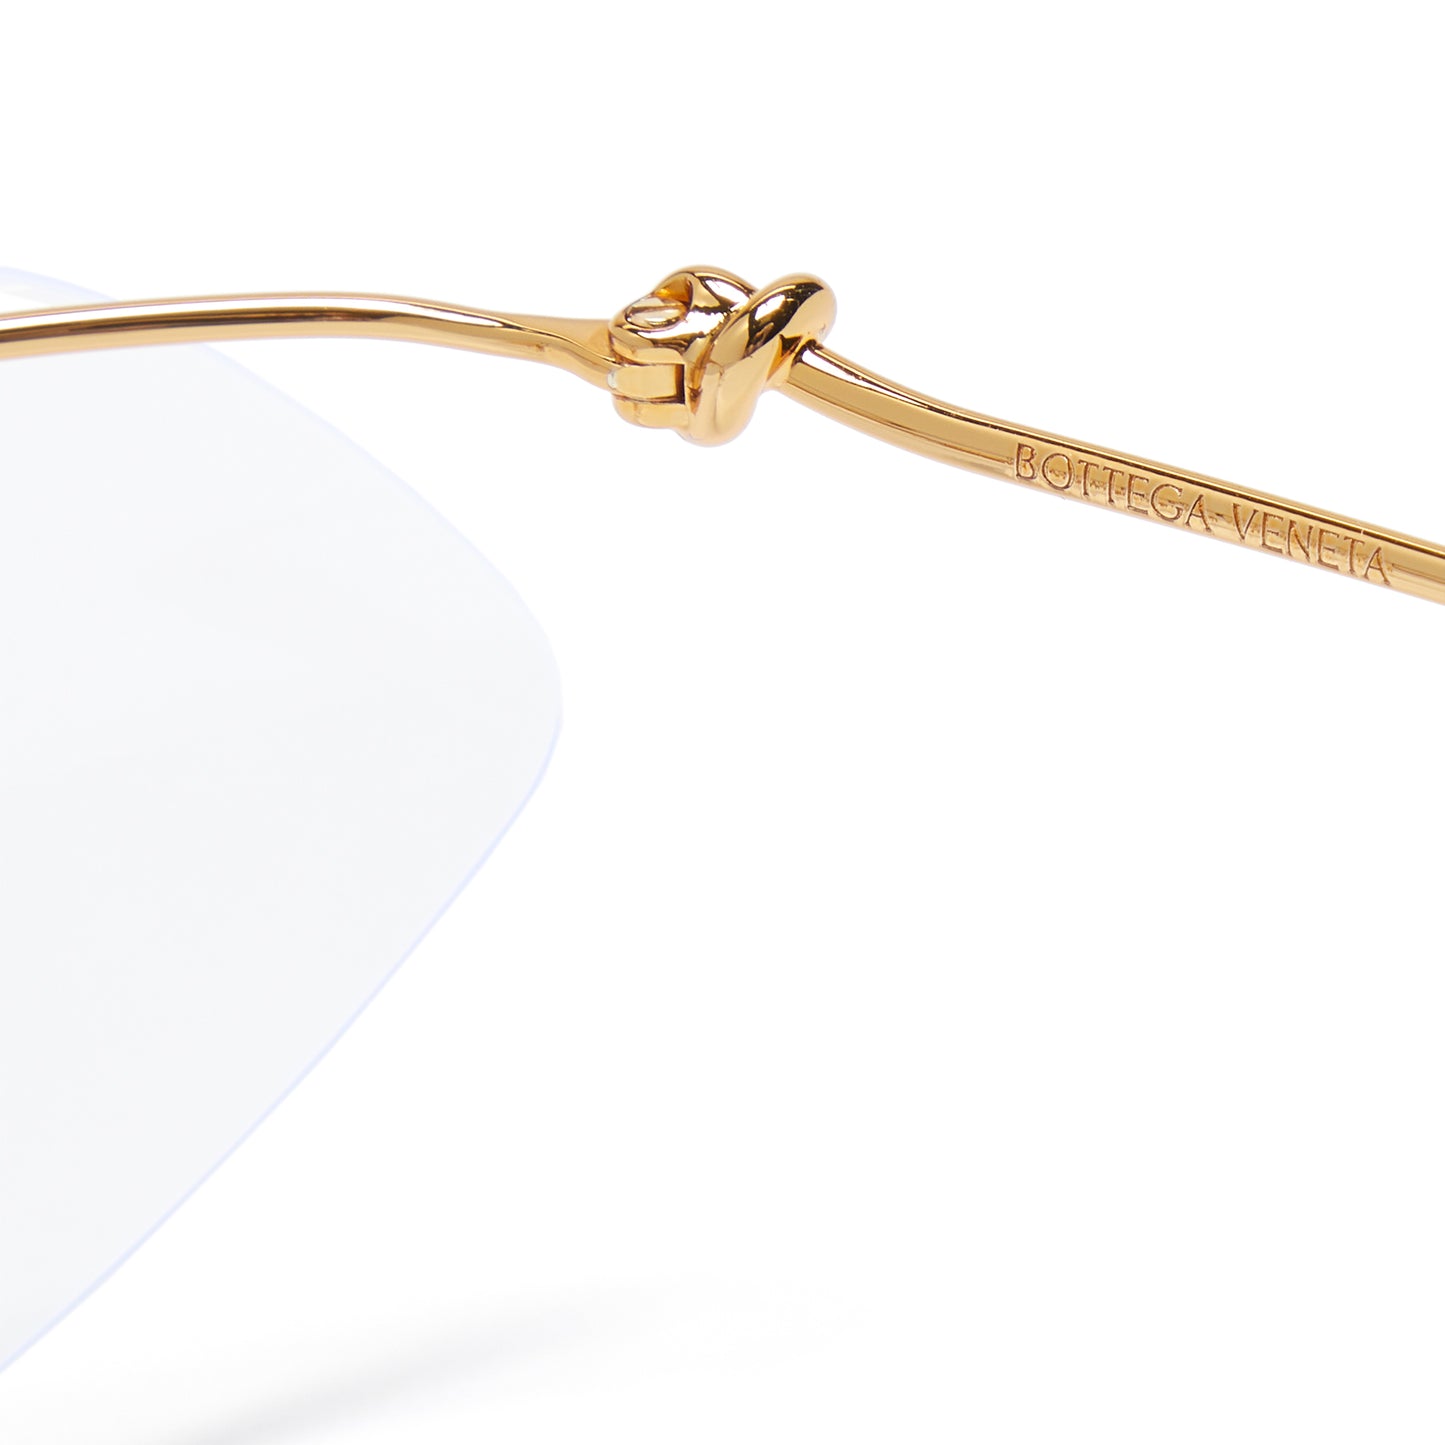 Bottega Veneta  Knot Shield metal sunglasses (Gold/Transparent)